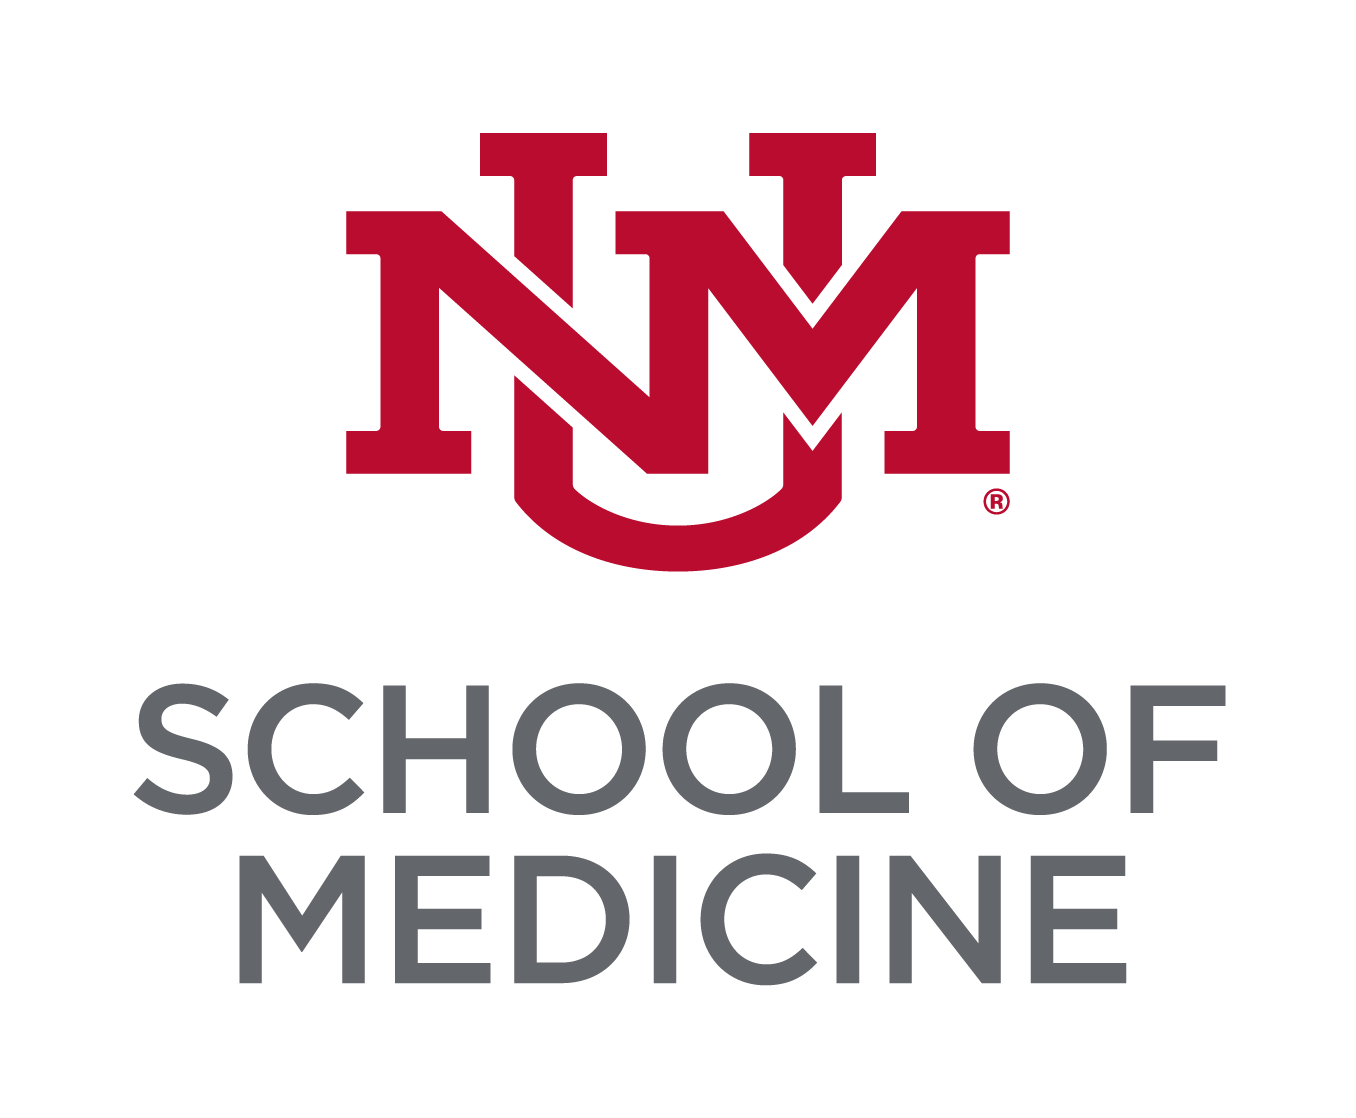 Le monogramme de bloc universitaire rouge cerise UNM empilé au-dessus du titre Lobo Grey "School of Medicine"..